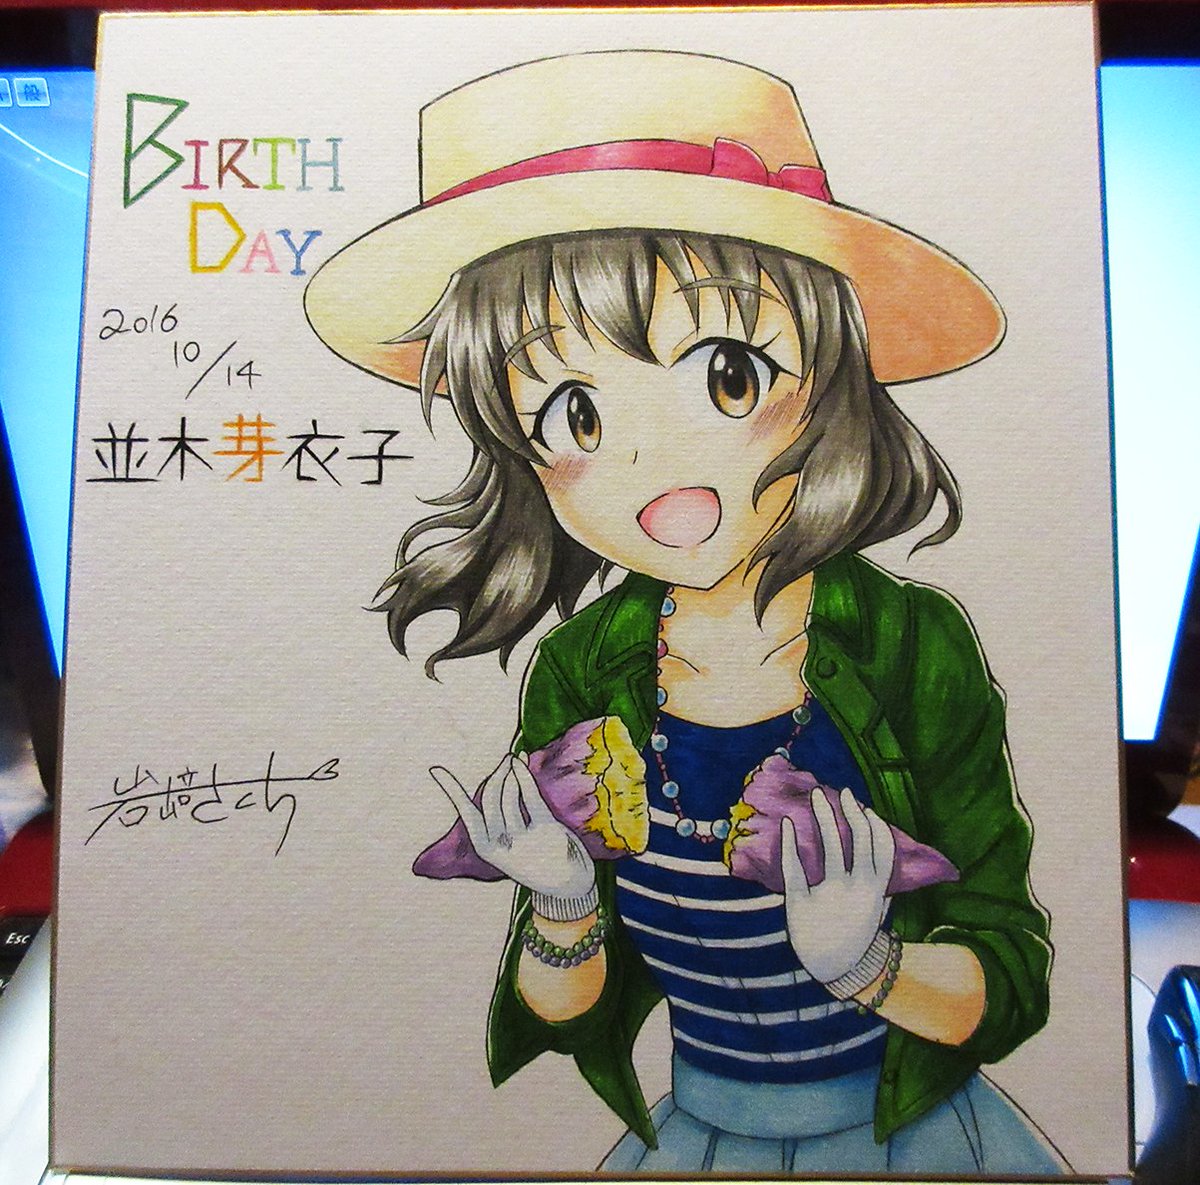 岩崎さくら Twitter પર 並木芽衣子さんお誕生日おめでとうございます 先週の芽衣子さん誕生日オフにて描かせていただいたケーキピック イラストと色紙 名刺用に作ったお祝いイラストを上げます